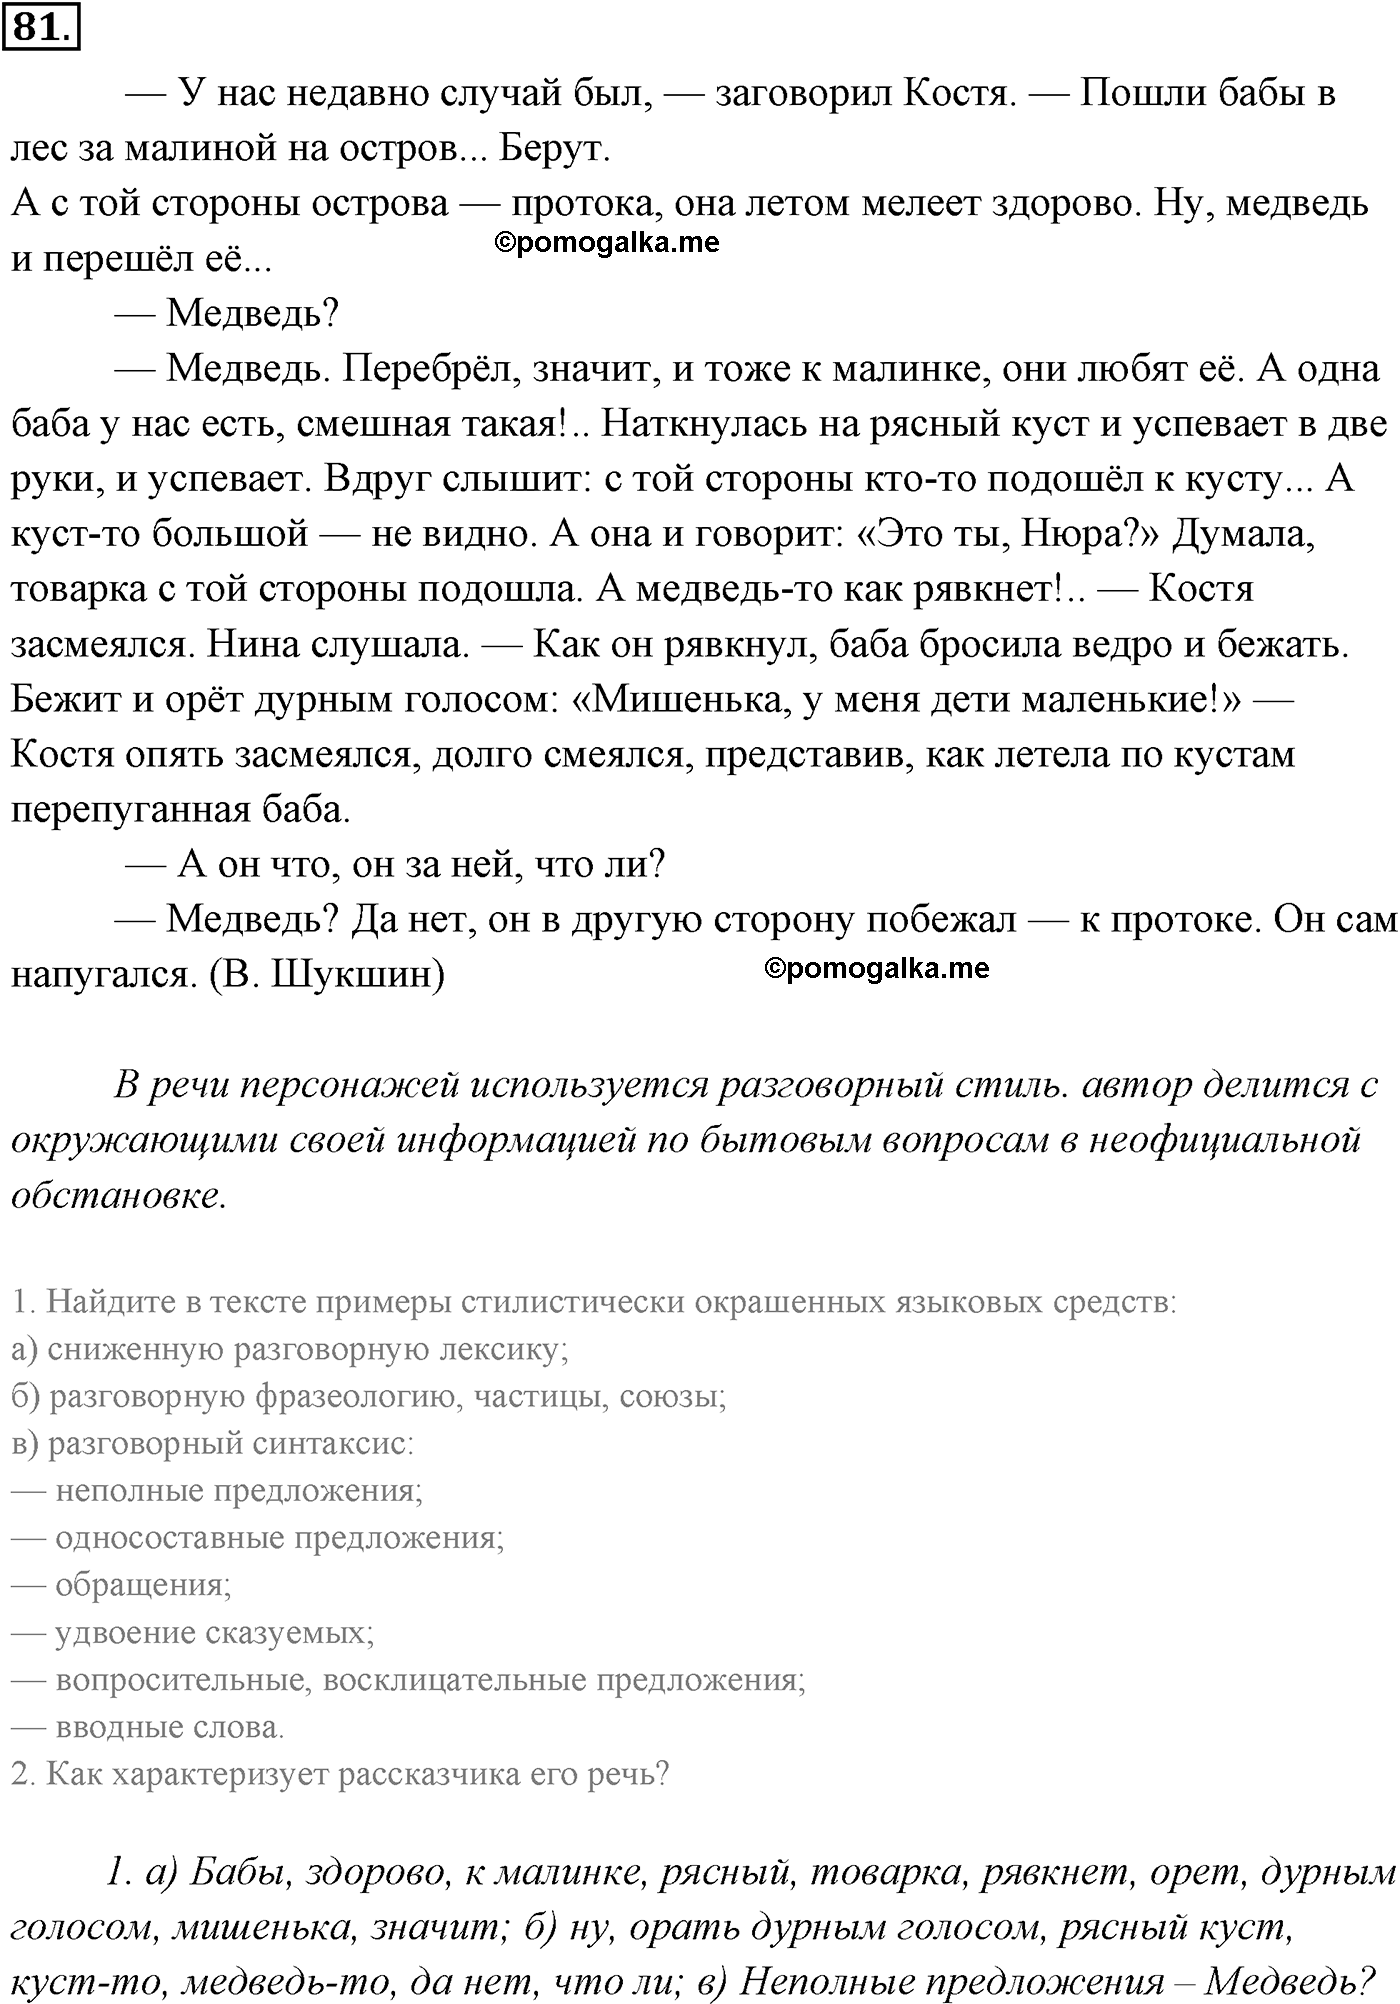 страница 60 номер 81 русский язык 9 класс Разумовская 2011 год